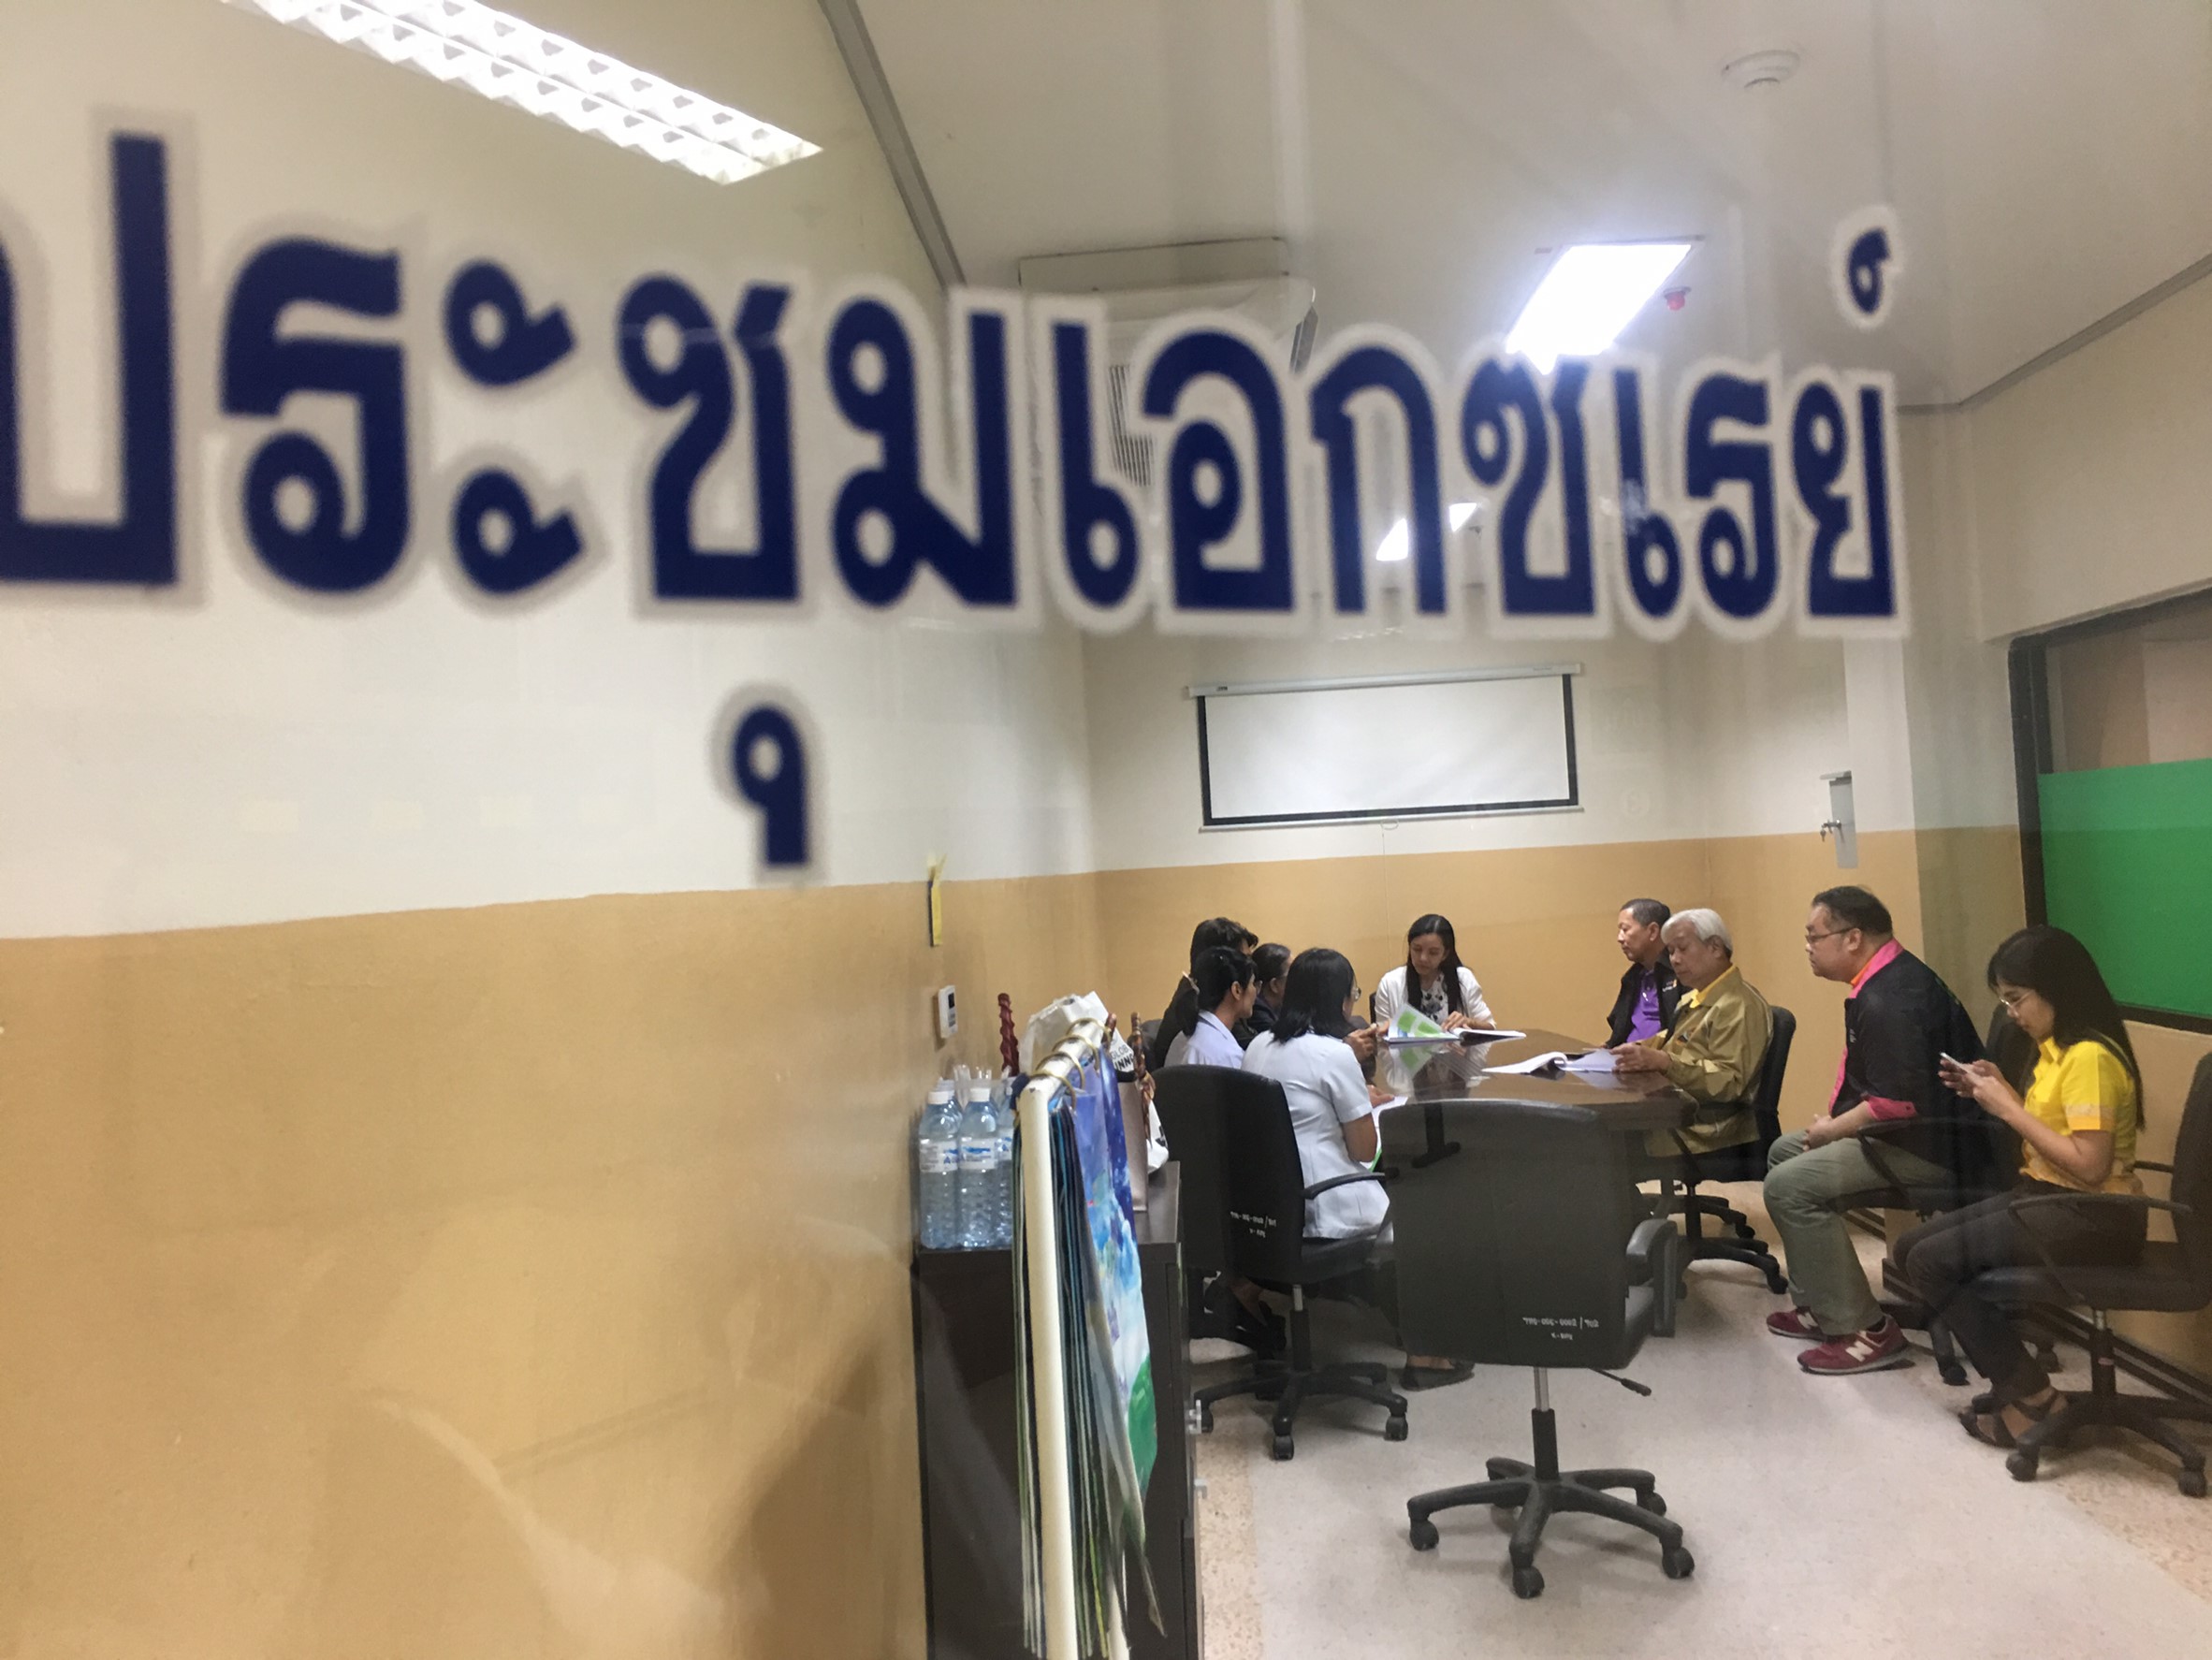 ประชุมวิชาการร่วมกับรังสีการแพทย์แห่งประเทศไทย ครั้งที่17 27-29 พ.ย. - พร้อมเข้าเยี่ยมและให้กำลังใจหน่วยงานรังสีวิทยาในพื้นที่จังหวัดอุบลราชธานีระหว่างวันที่ 25-26 พฤศจิกายน 2562 67